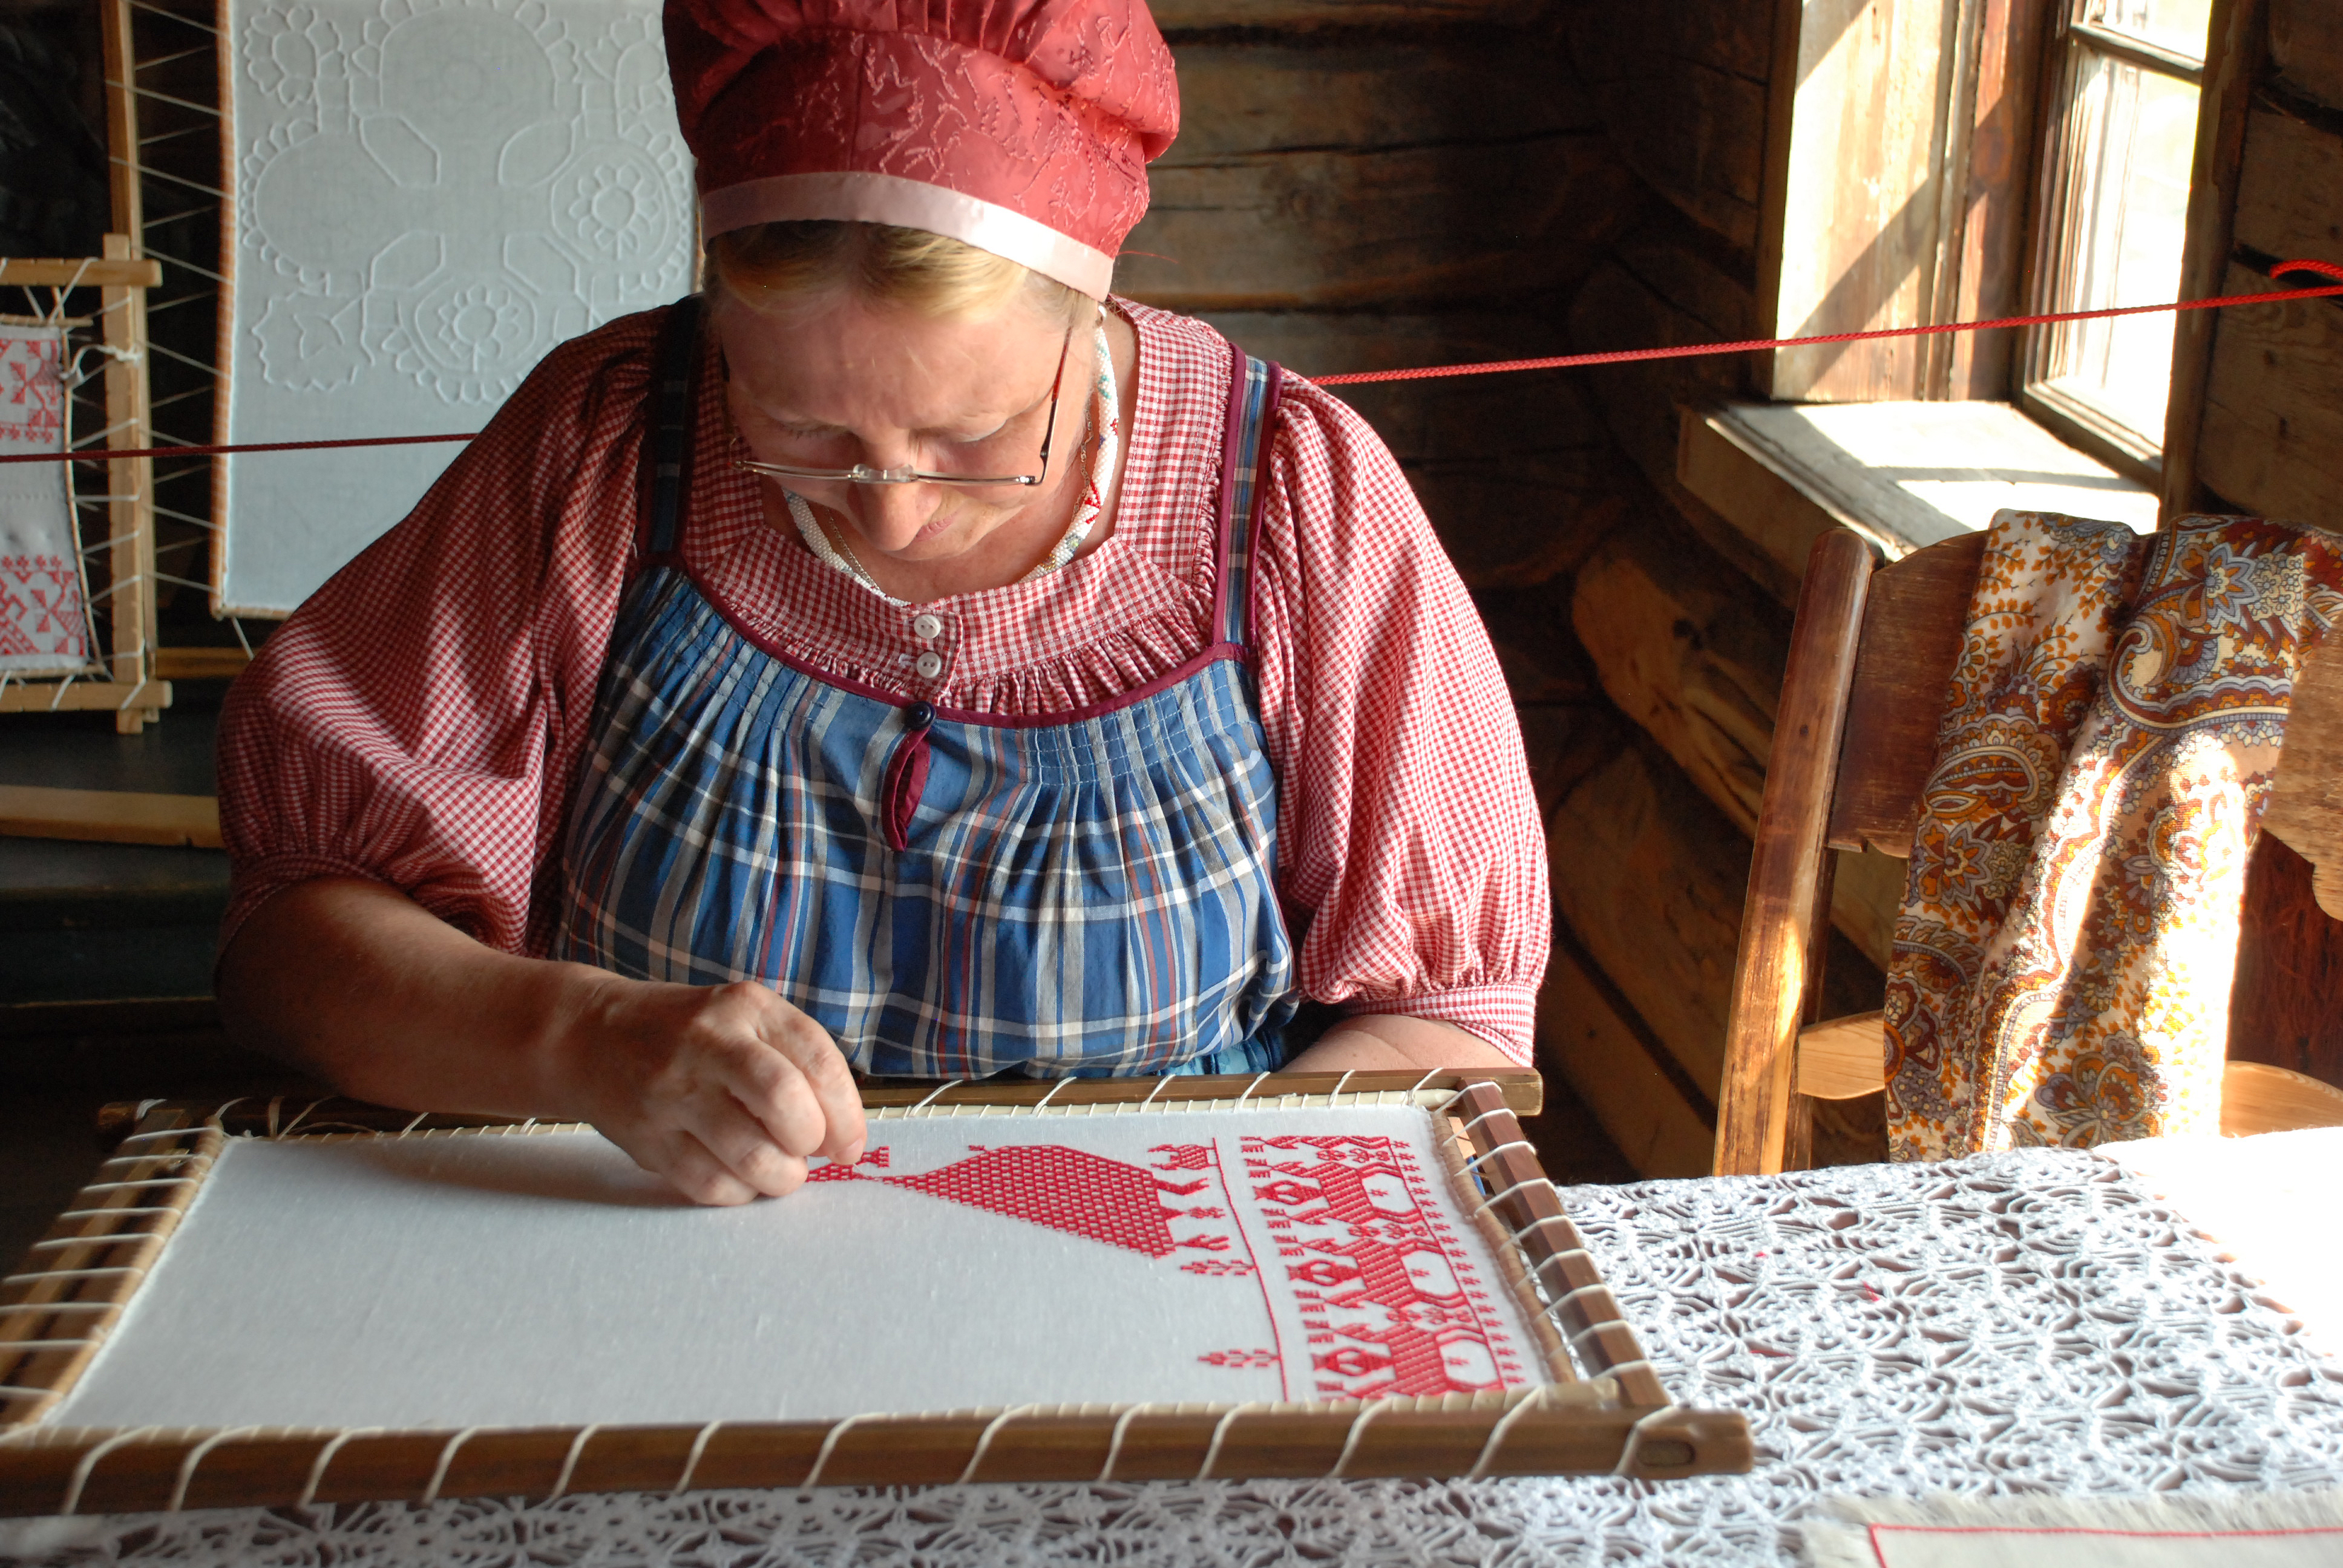 Бабушка что будет делать. Ремесло вышивальщицы. Мастерицы-вышивальщицы. Женщина вышивает. Рукоделие в старину.